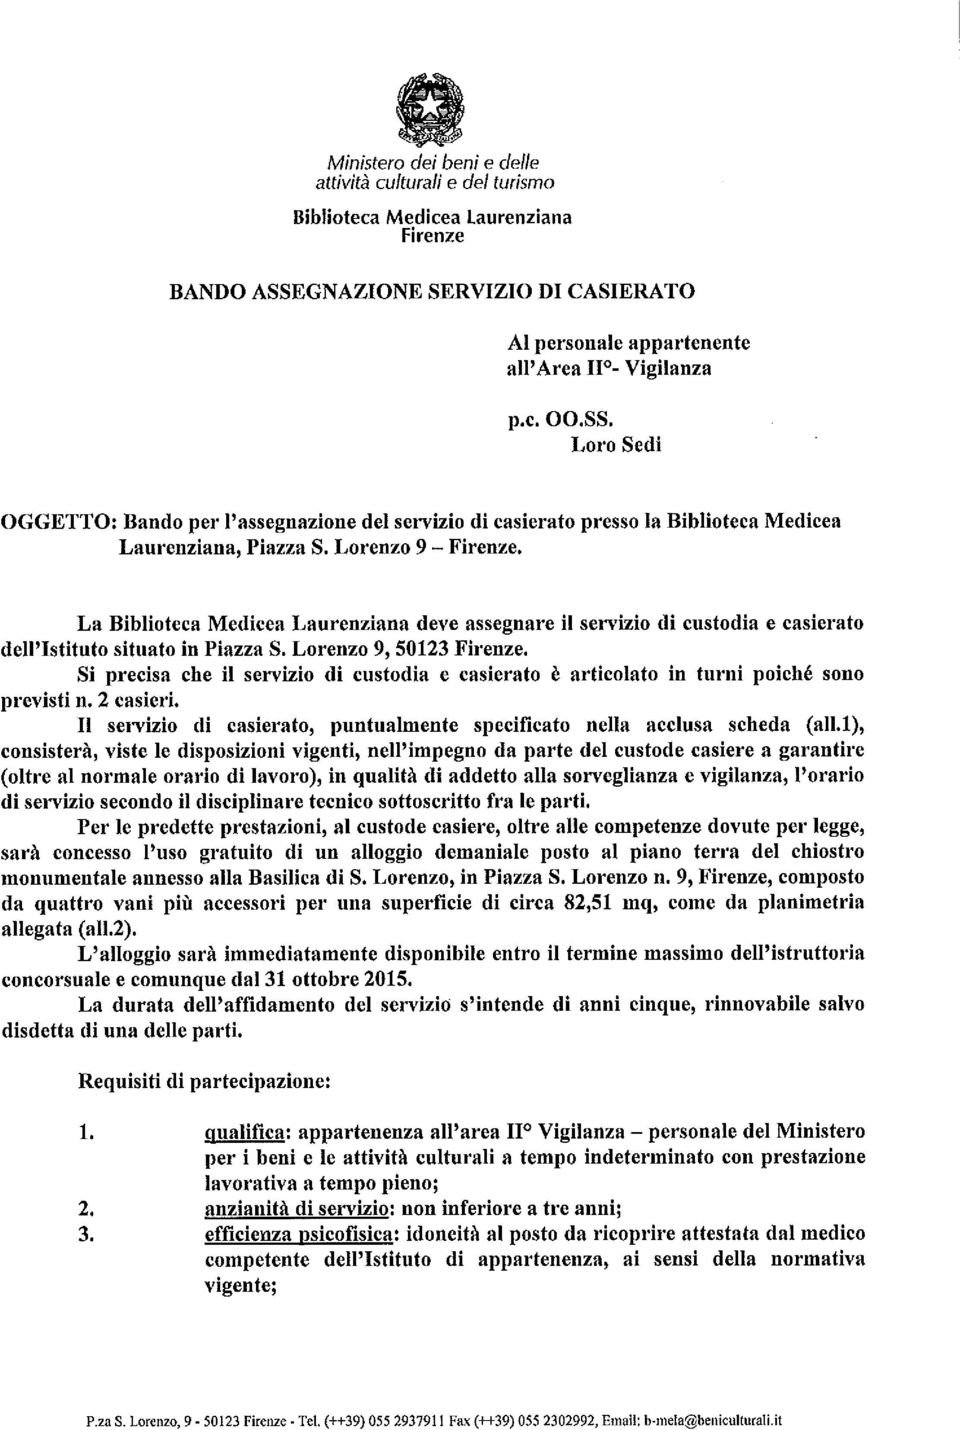 La Biblioteca Medicea Laurenziana deve assegnare il servizio di custodia e casierato dell'istituto situato in Piazza S. Lorenzo 9, 50123 Firenze.